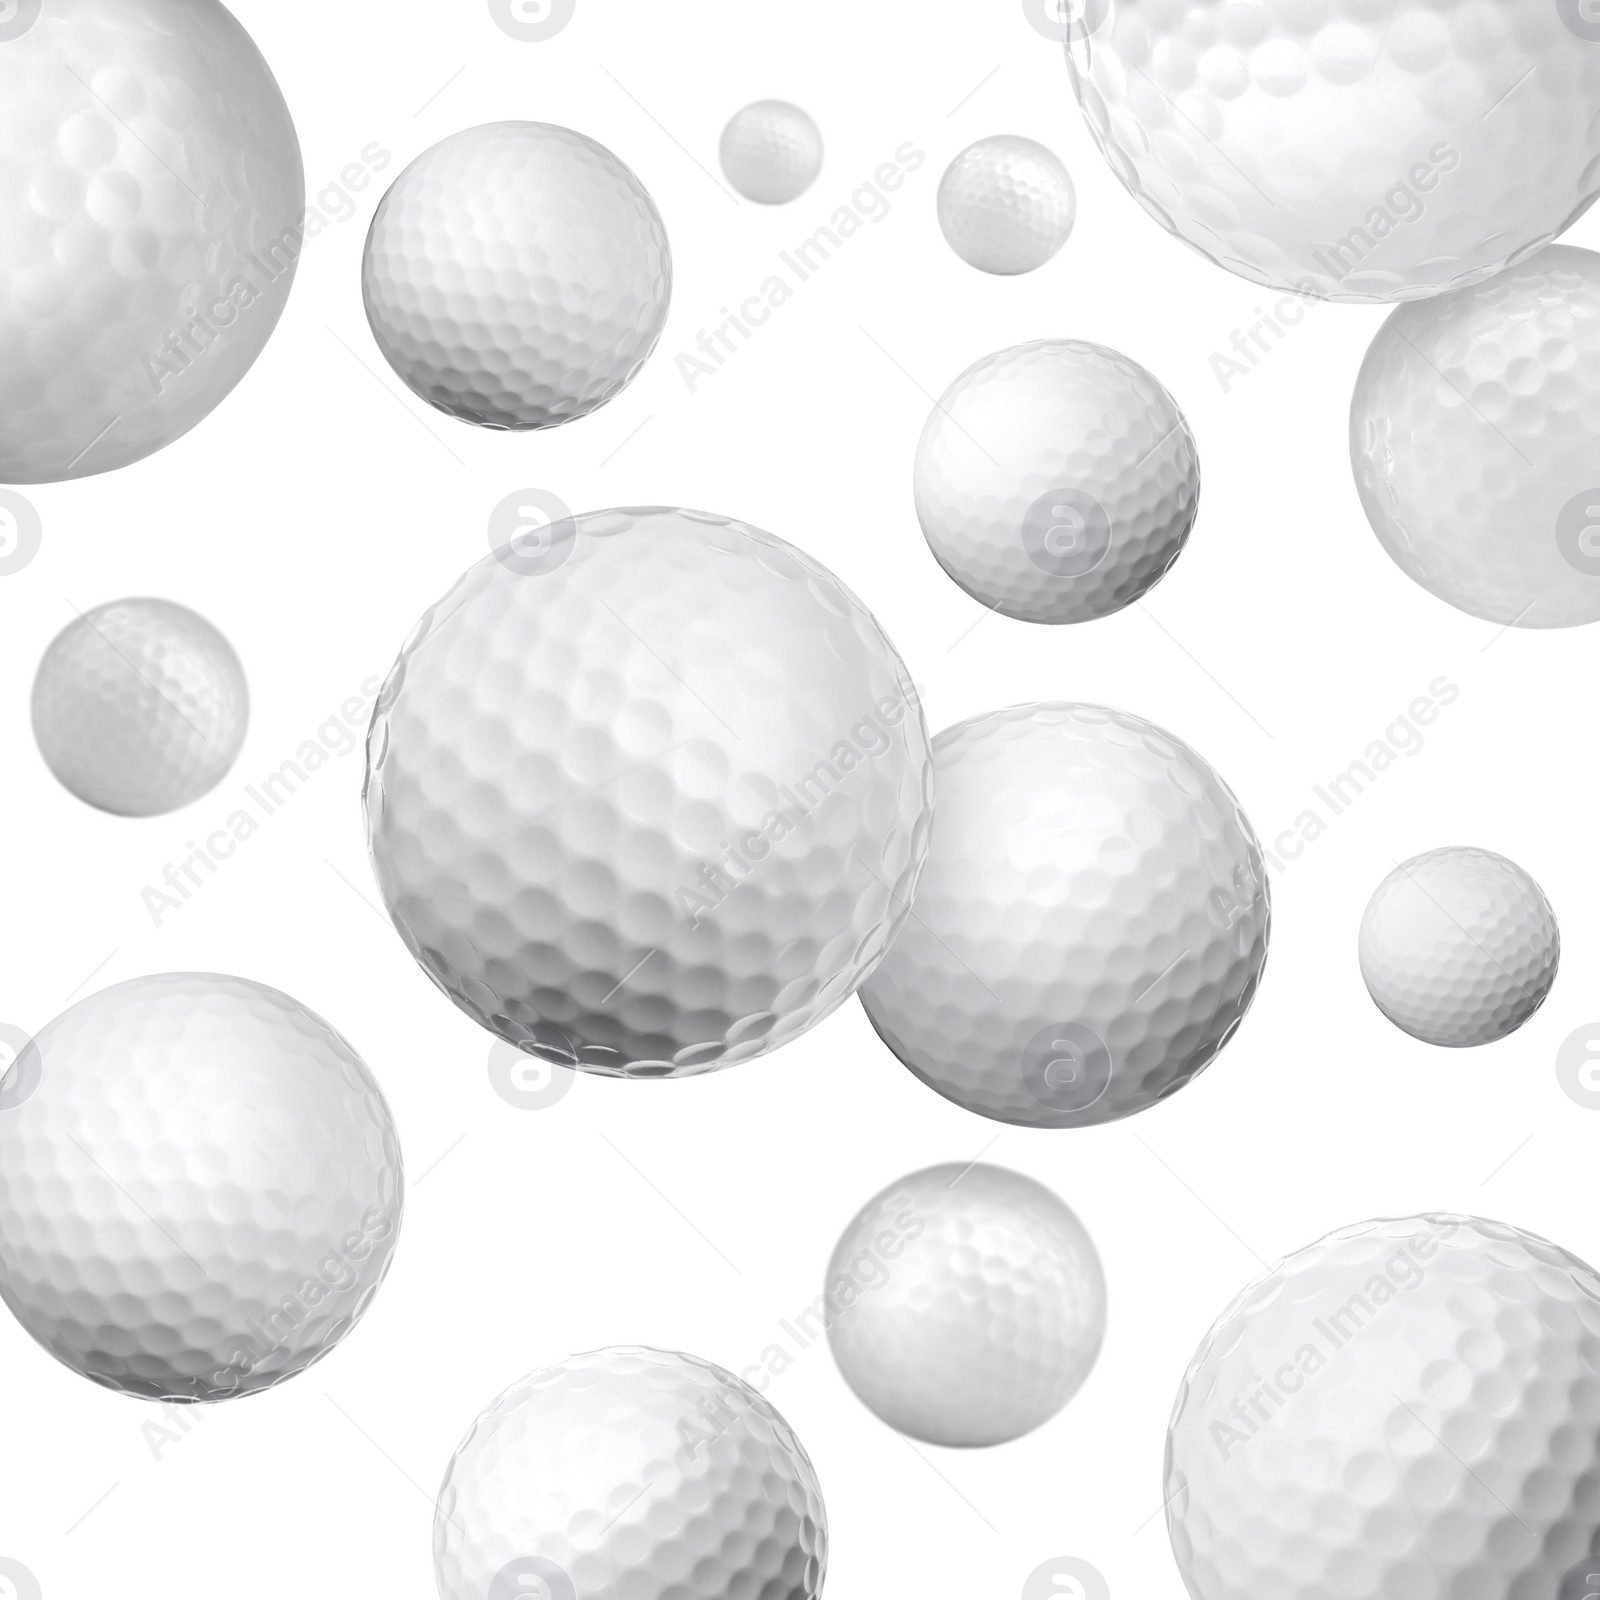 Image of Many golf balls falling on white background